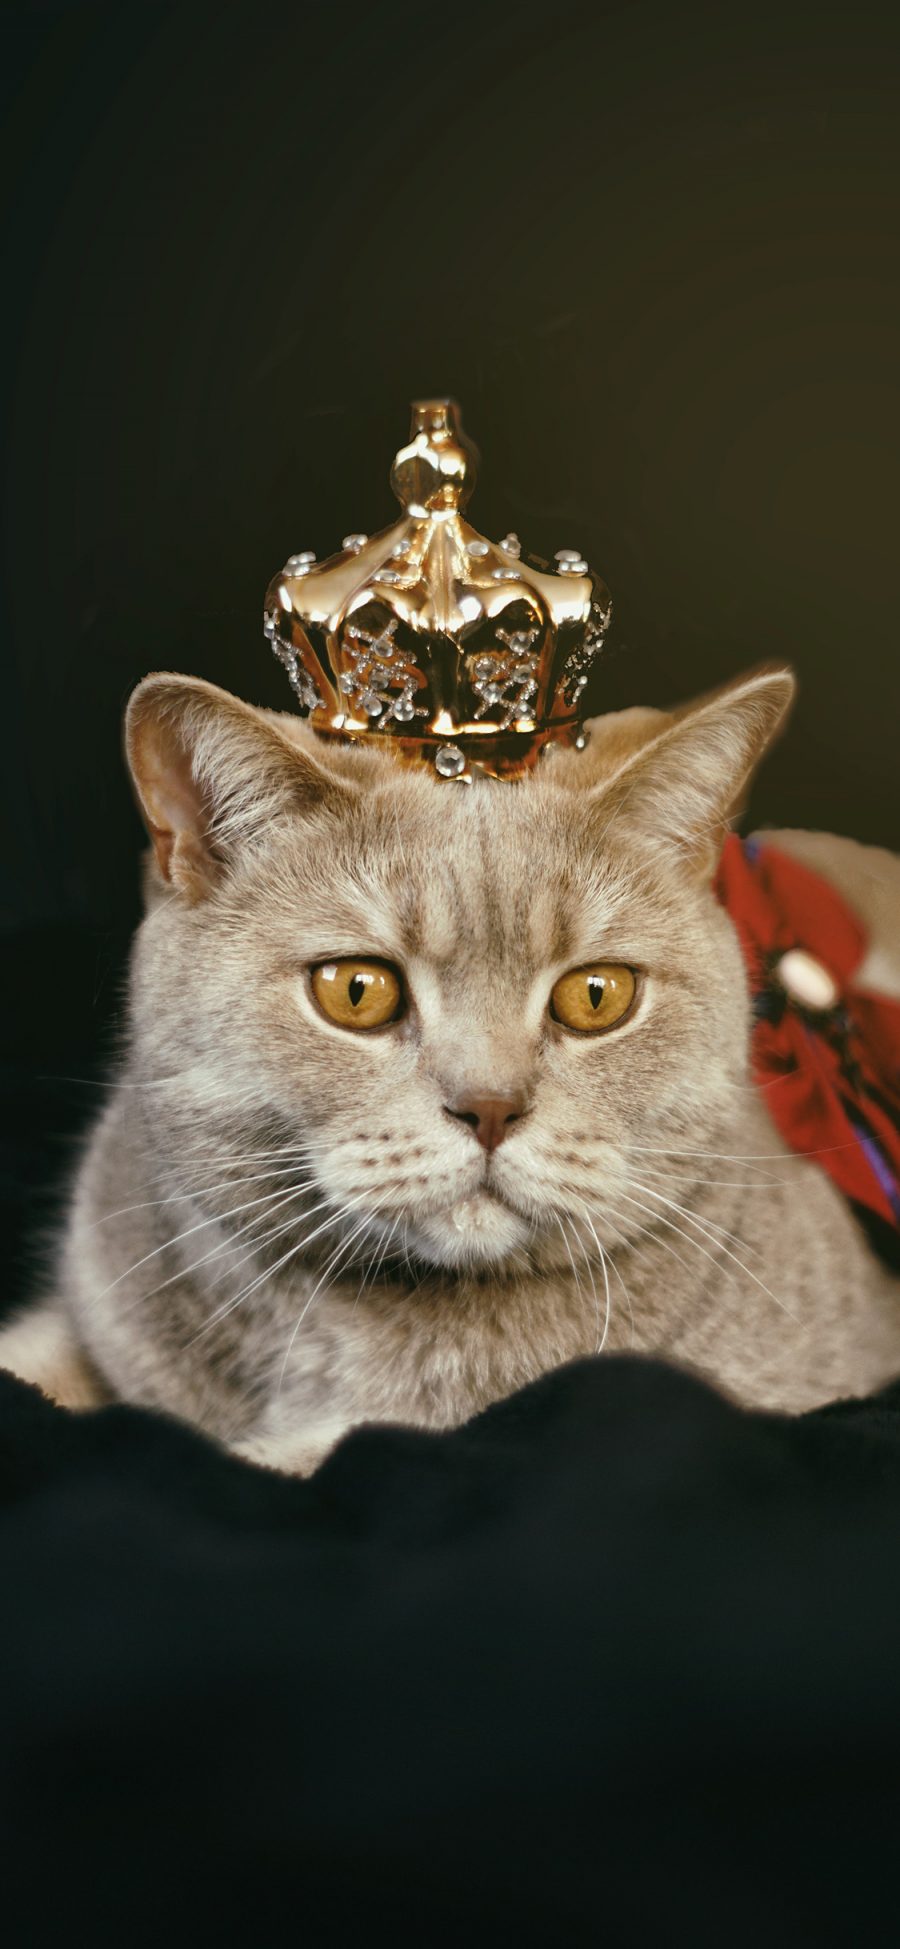 [2436×1125]猫咪 宠物 皇冠 服饰 苹果手机壁纸图片